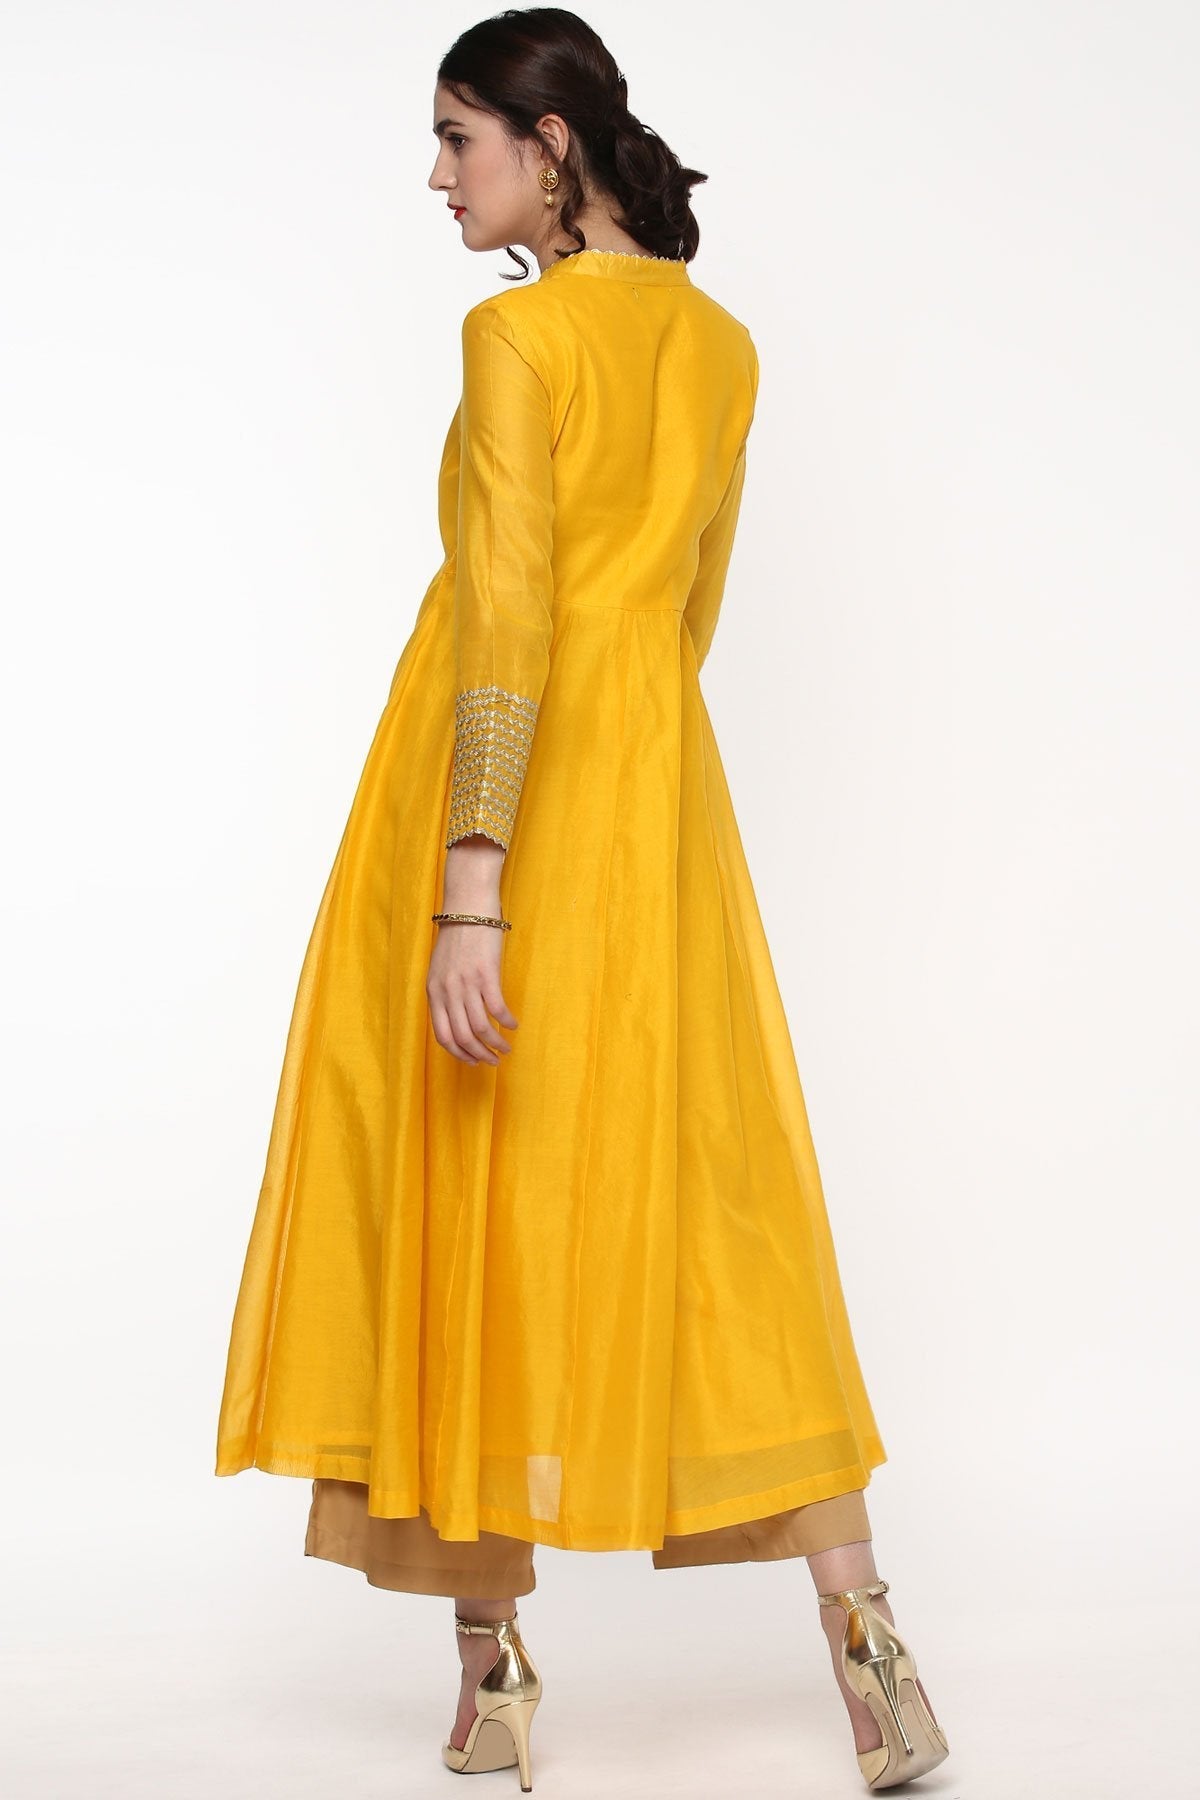 Women's Yellow Anarkali Kurta With Gota Lace On Cuff - SHAE